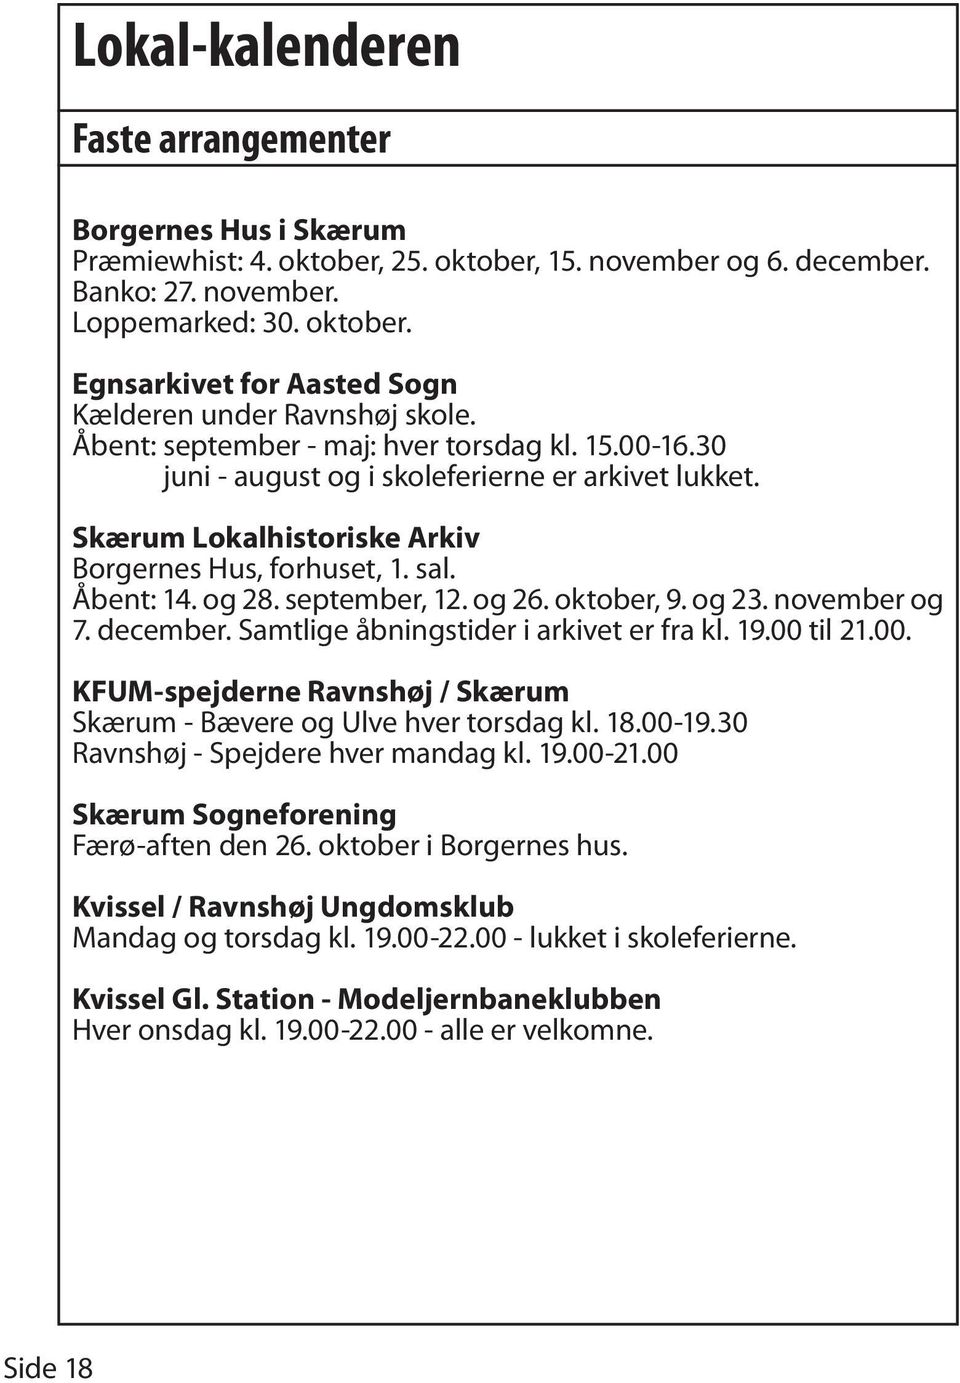 og 26. oktober, 9. og 23. november og 7. december. Samtlige åbningstider i arkivet er fra kl. 19.00 til 21.00. KFUM-spejderne Ravnshøj / Skærum Skærum - Bævere og Ulve hver torsdag kl. 18.00-19.